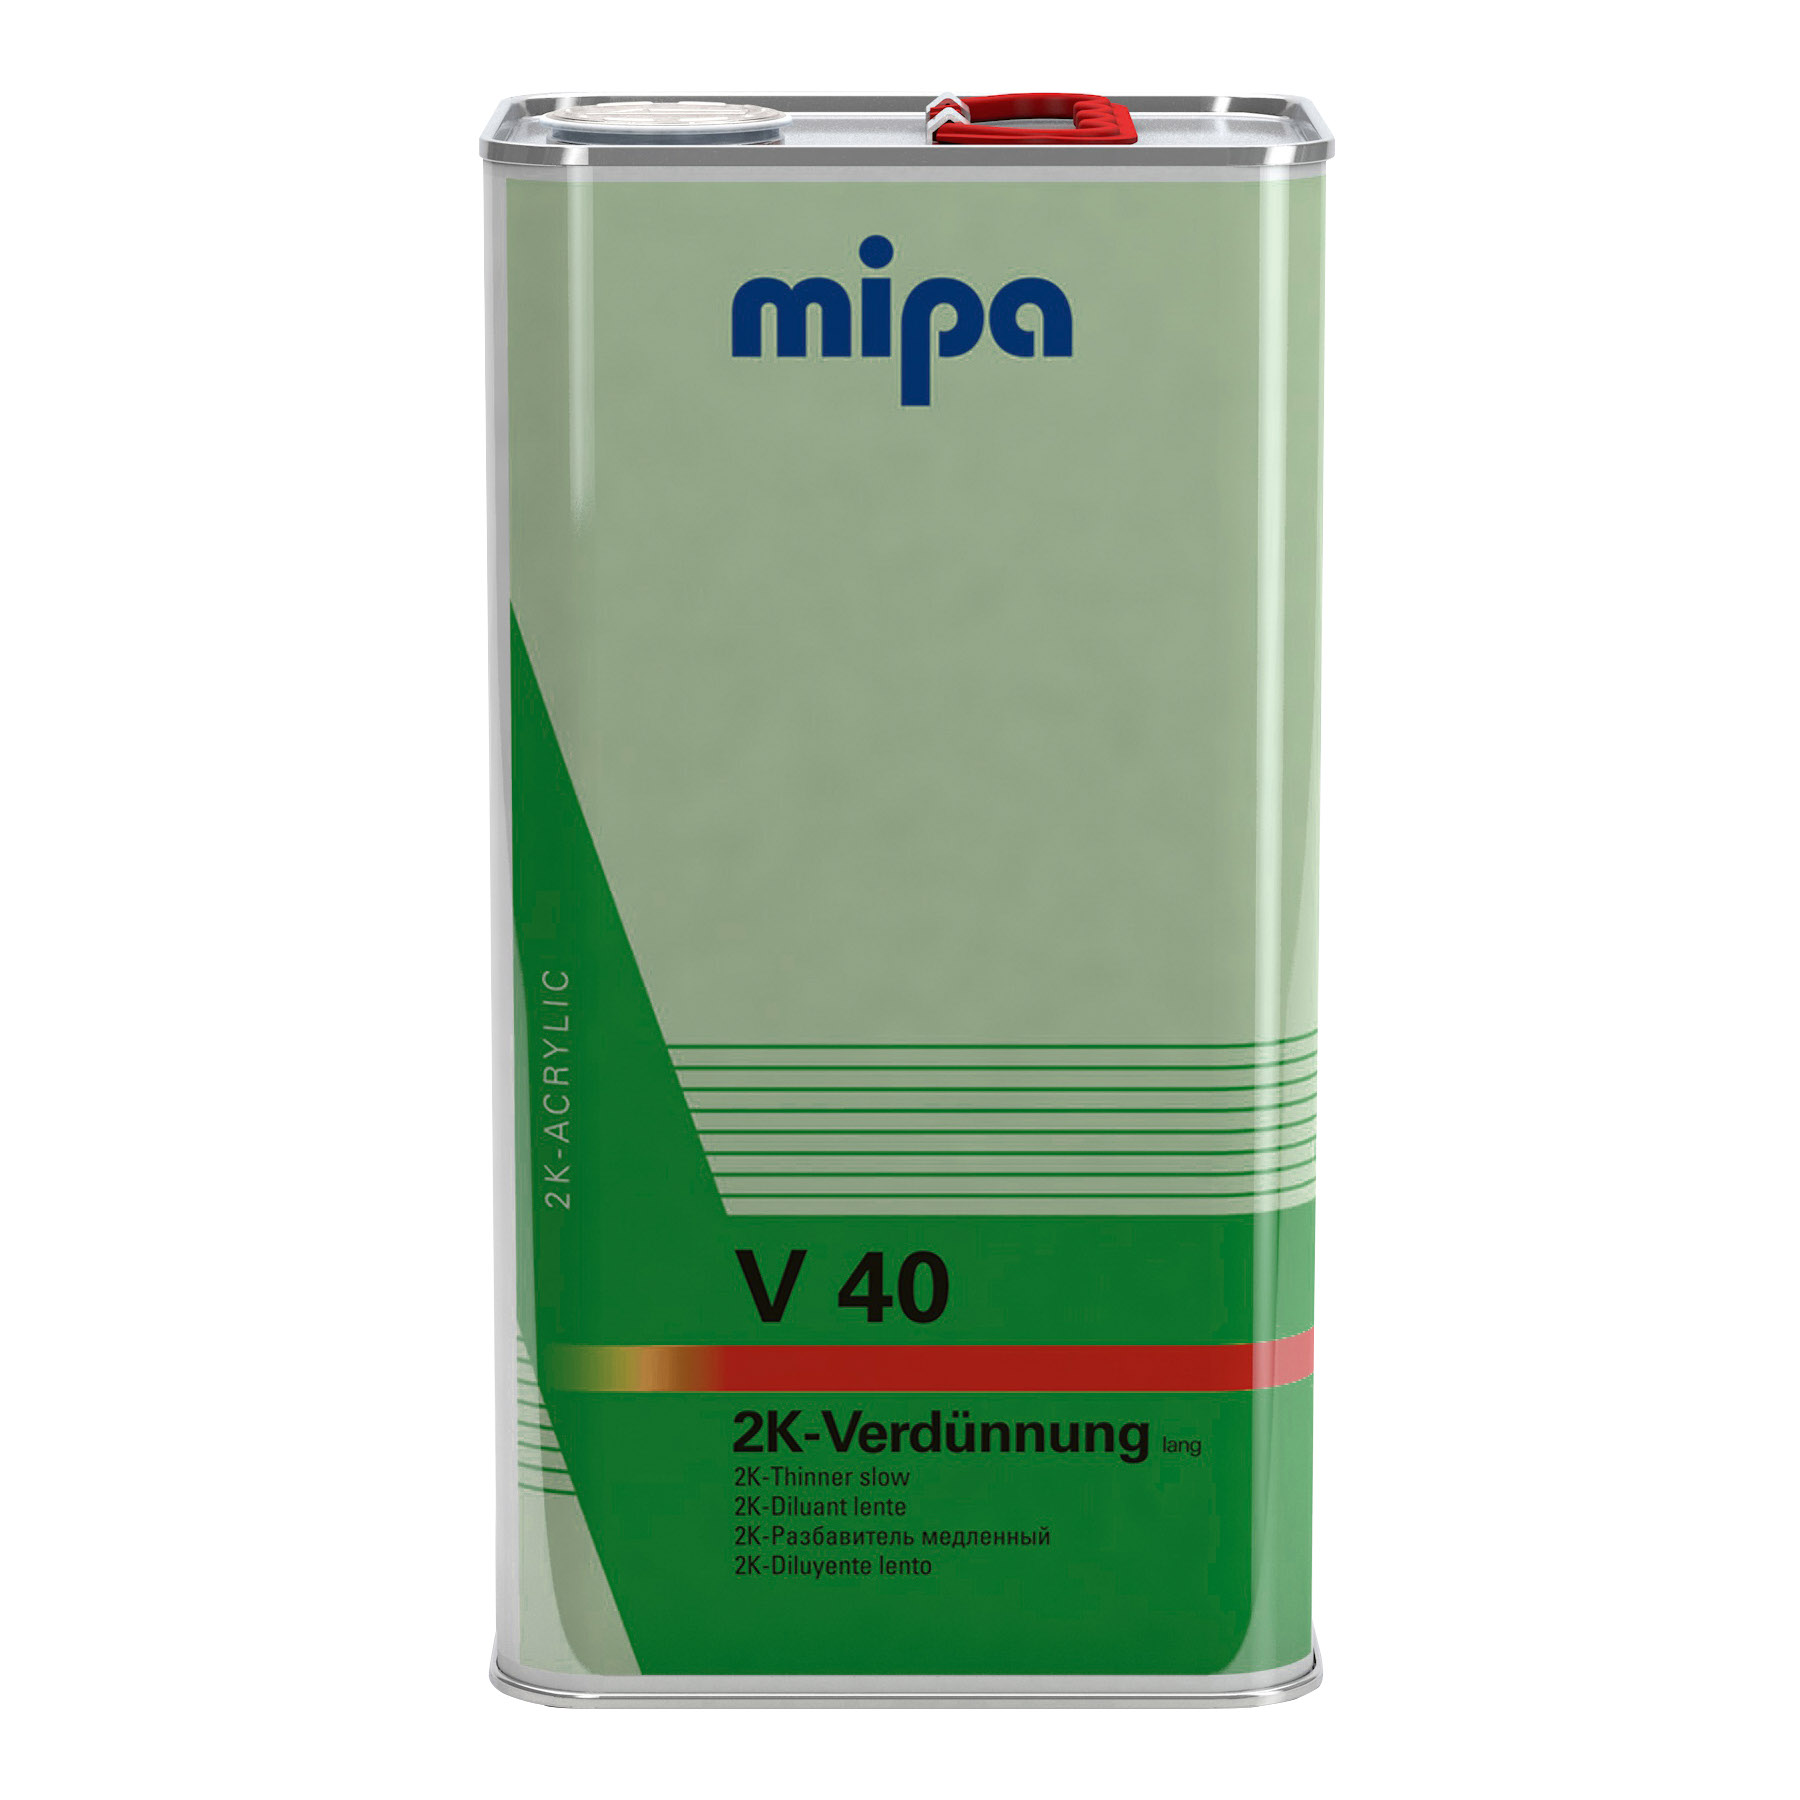 Mipa 2K-Verdünnung lang V 40, 5 l